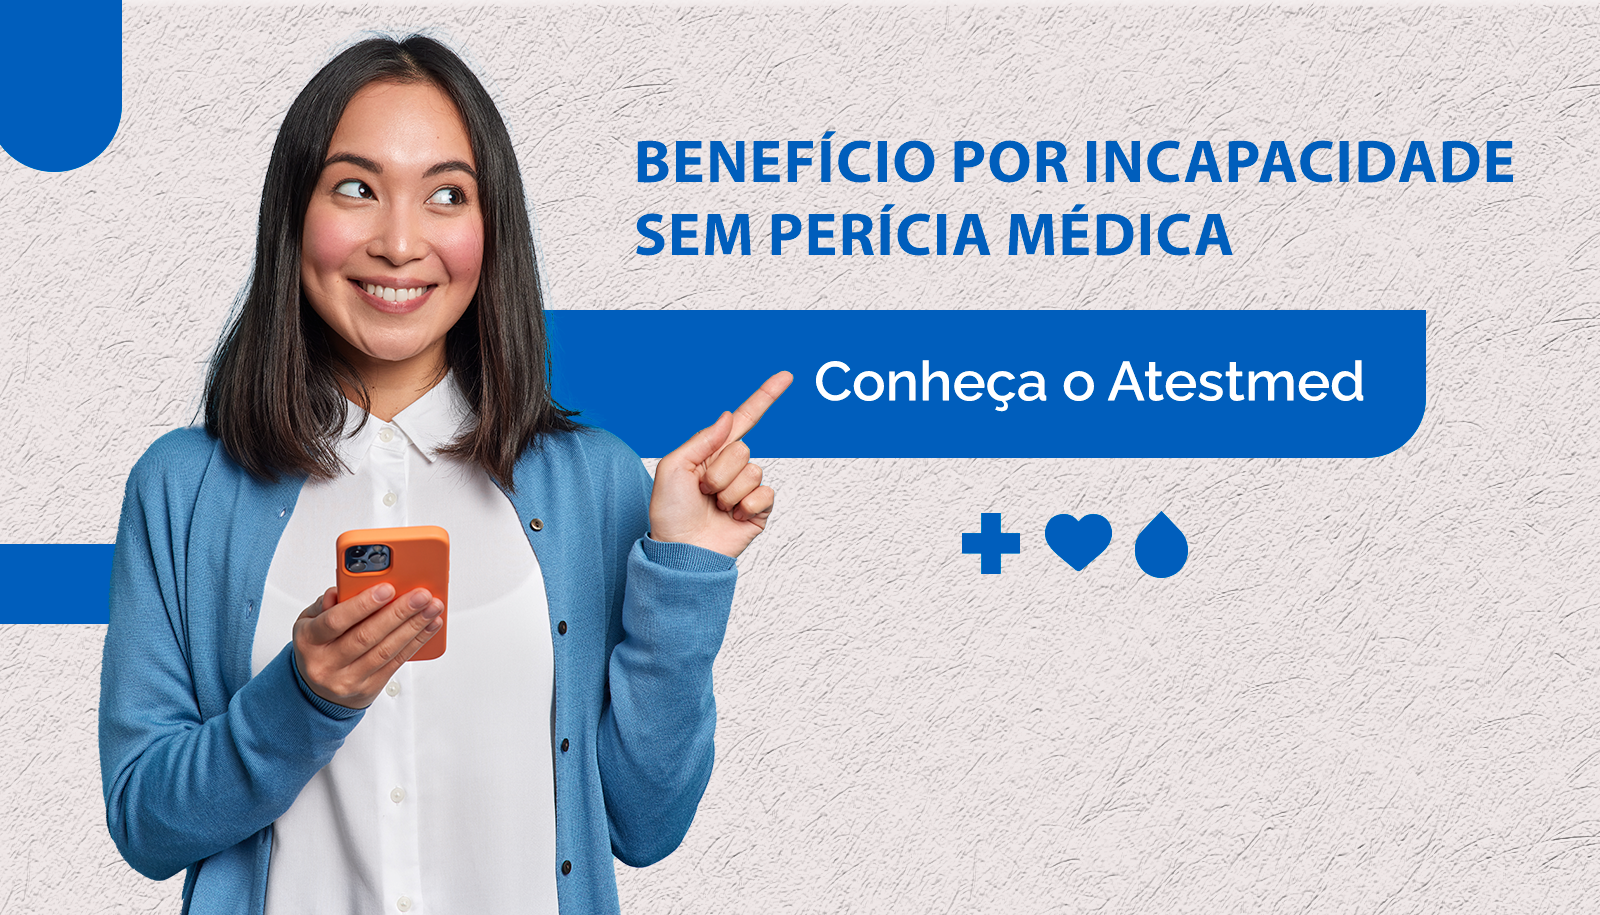 INSS anuncia mudança para todos os beneficiários no dia 20 de março! Confira as novas formas de solicitar benefício (Fonte: Gov.br)